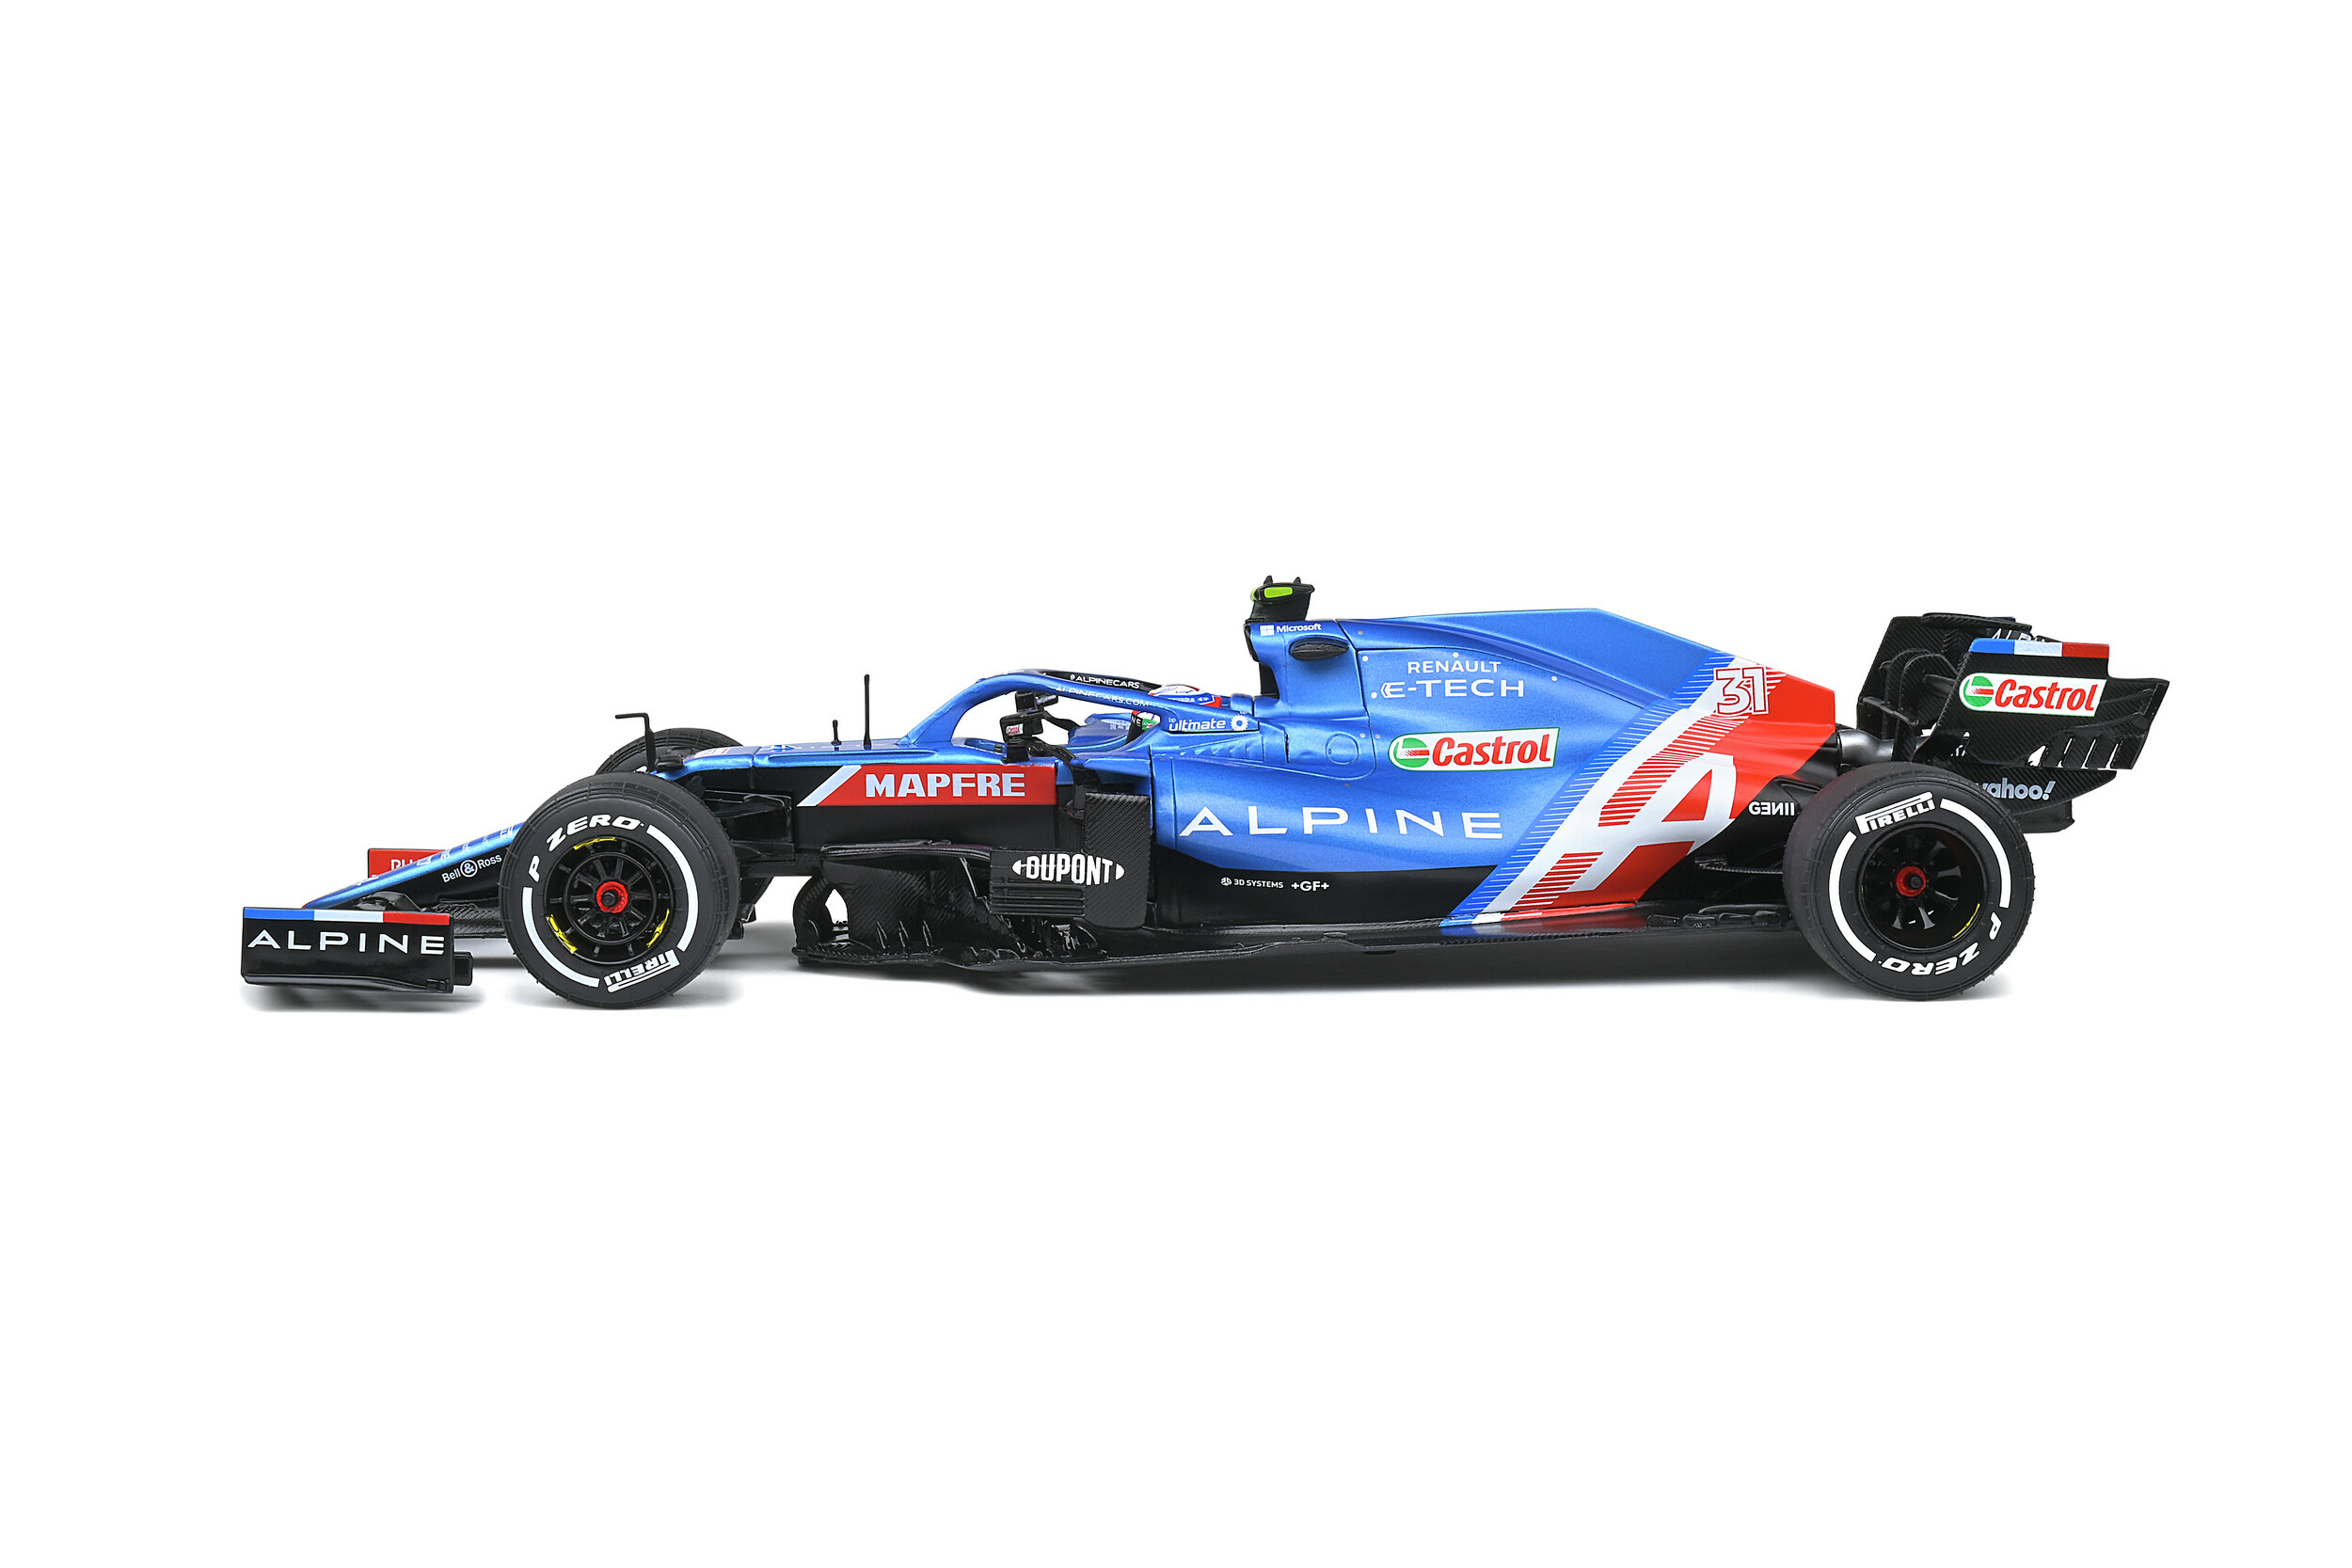 Formule 1 Esteban Ocon - Grand Prix Hongrie 2021 - Solido vue côté gauche